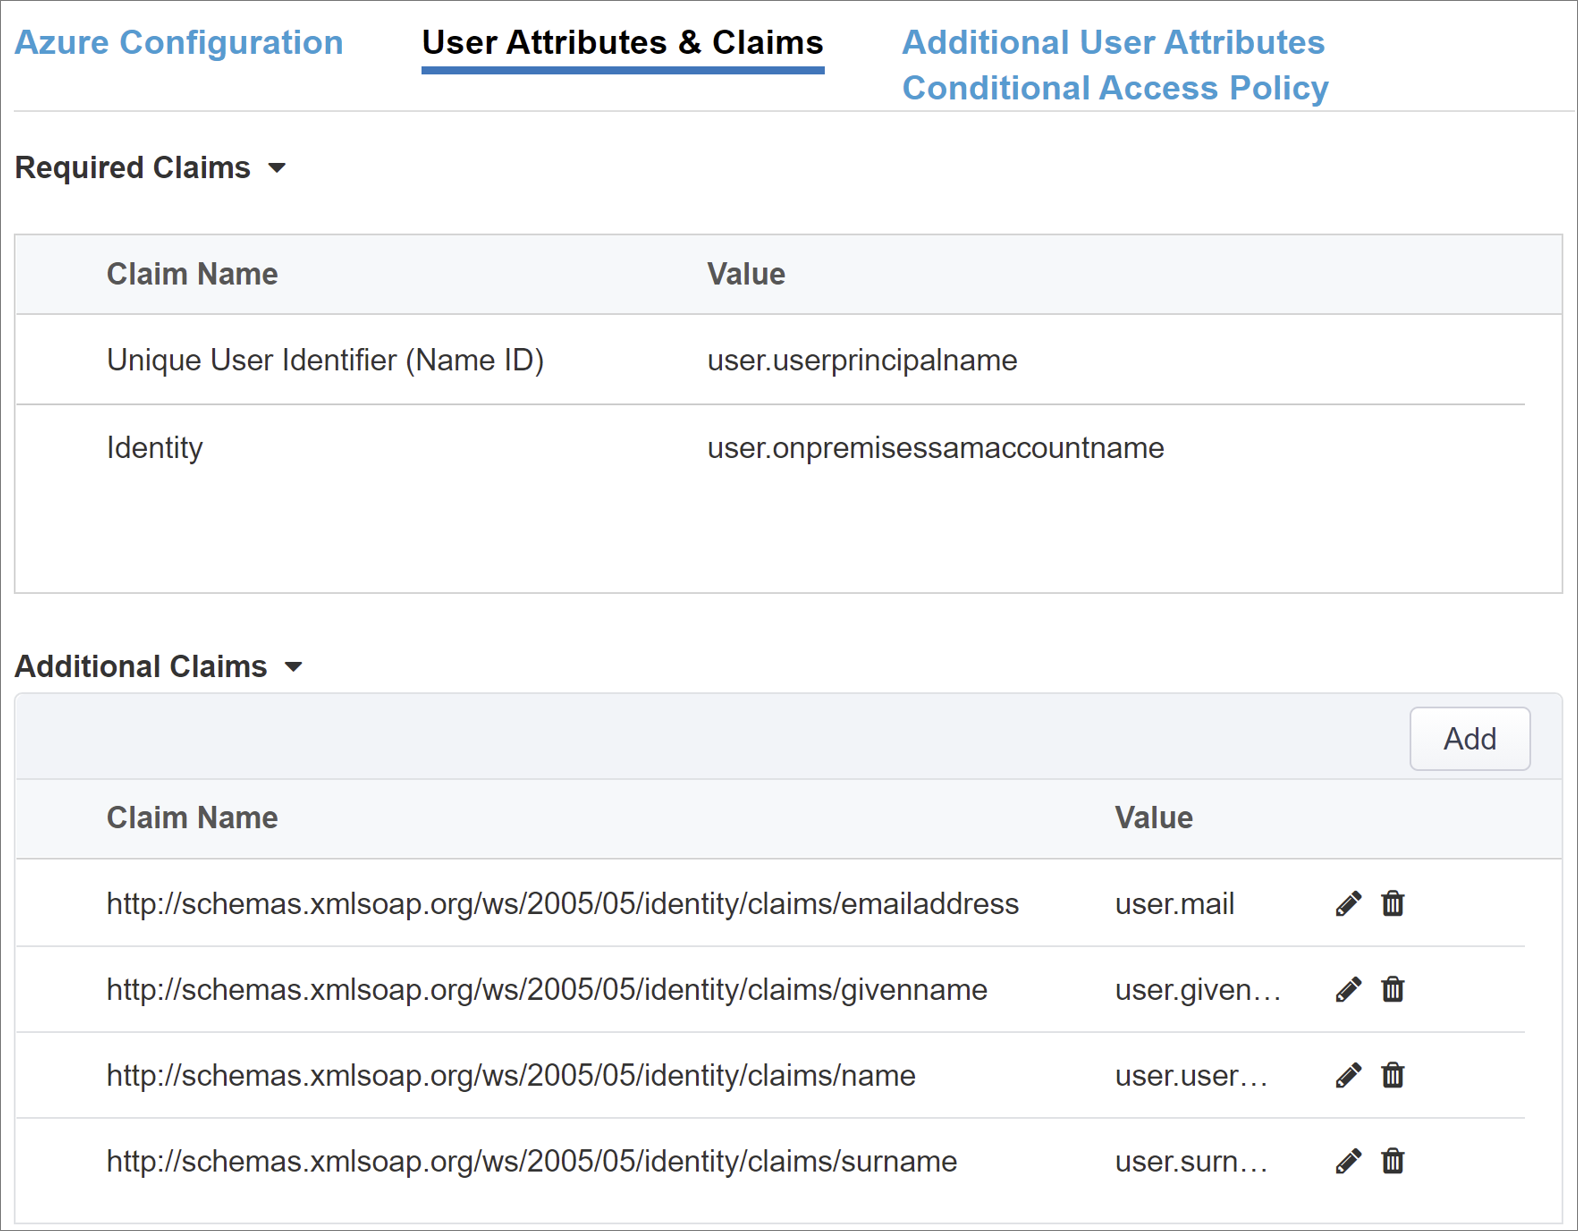 Captura de tela das opções e seleções para Atributos e Declarações do Usuário.